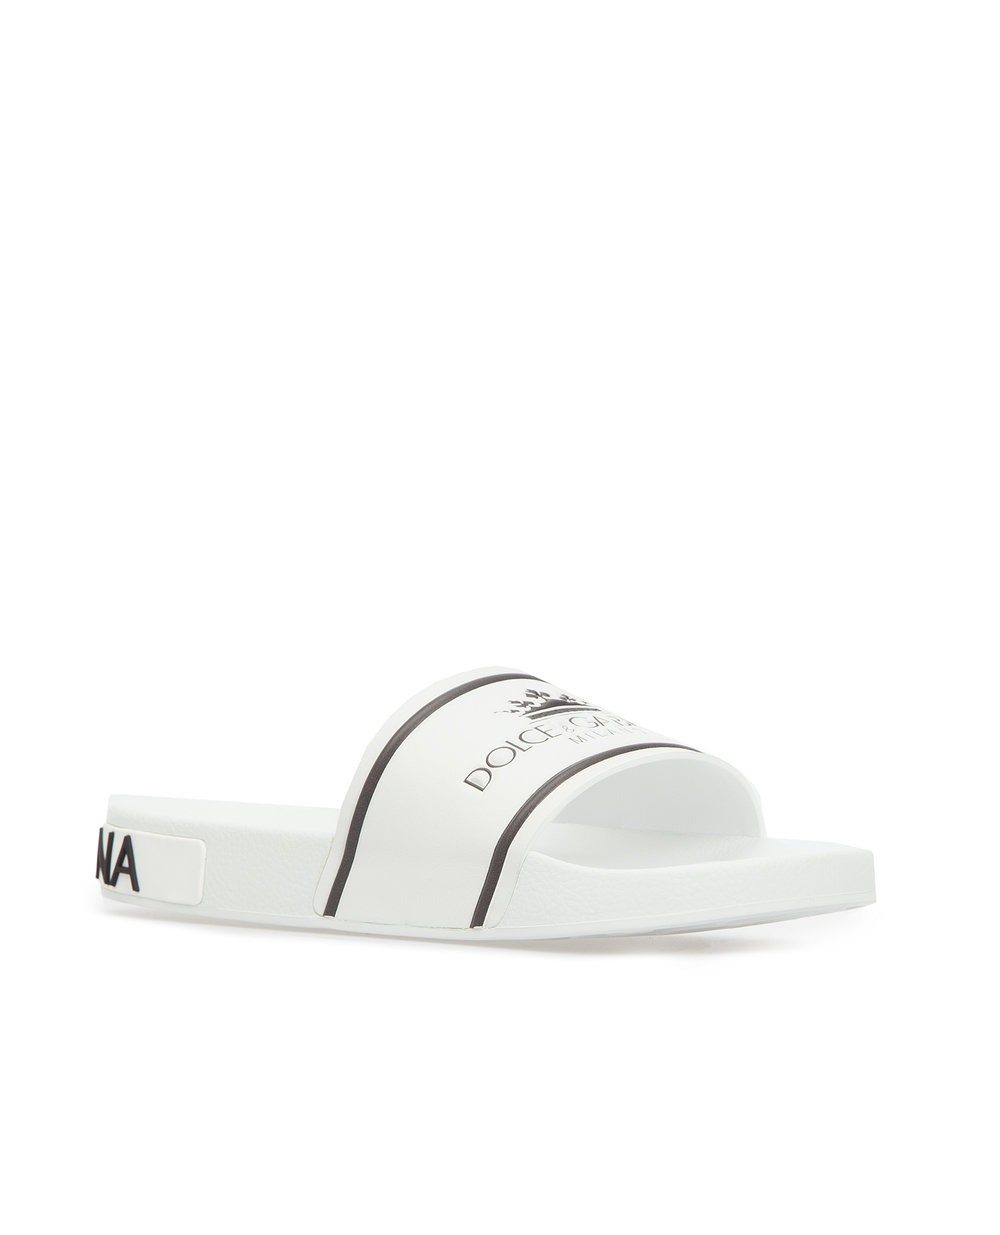 Слайдеры Saint Barth Dolce&Gabbana CS1646-AZ578FW19, белый цвет • Купить в интернет-магазине Kameron